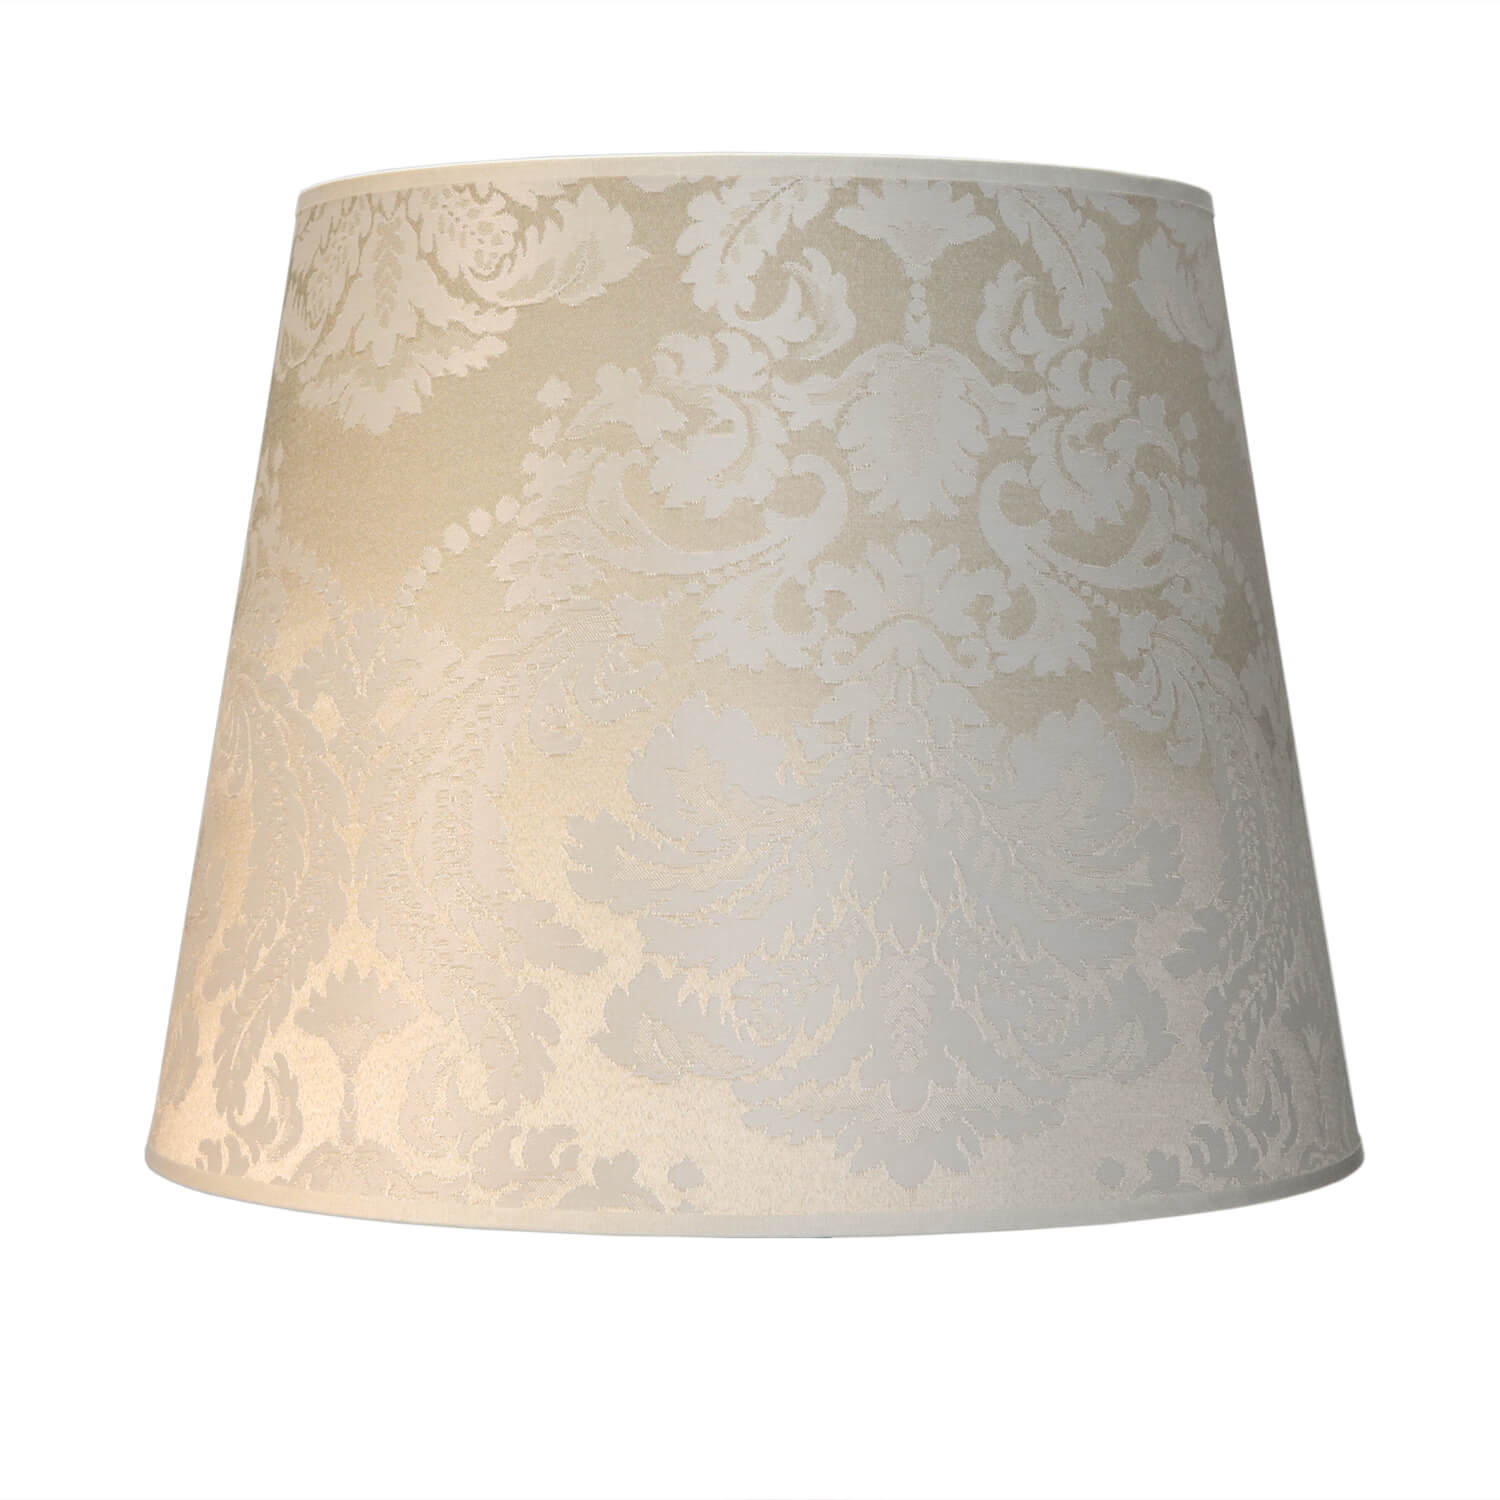 Stoff Lampenschirm Creme Weiß Stehlampe groß E27